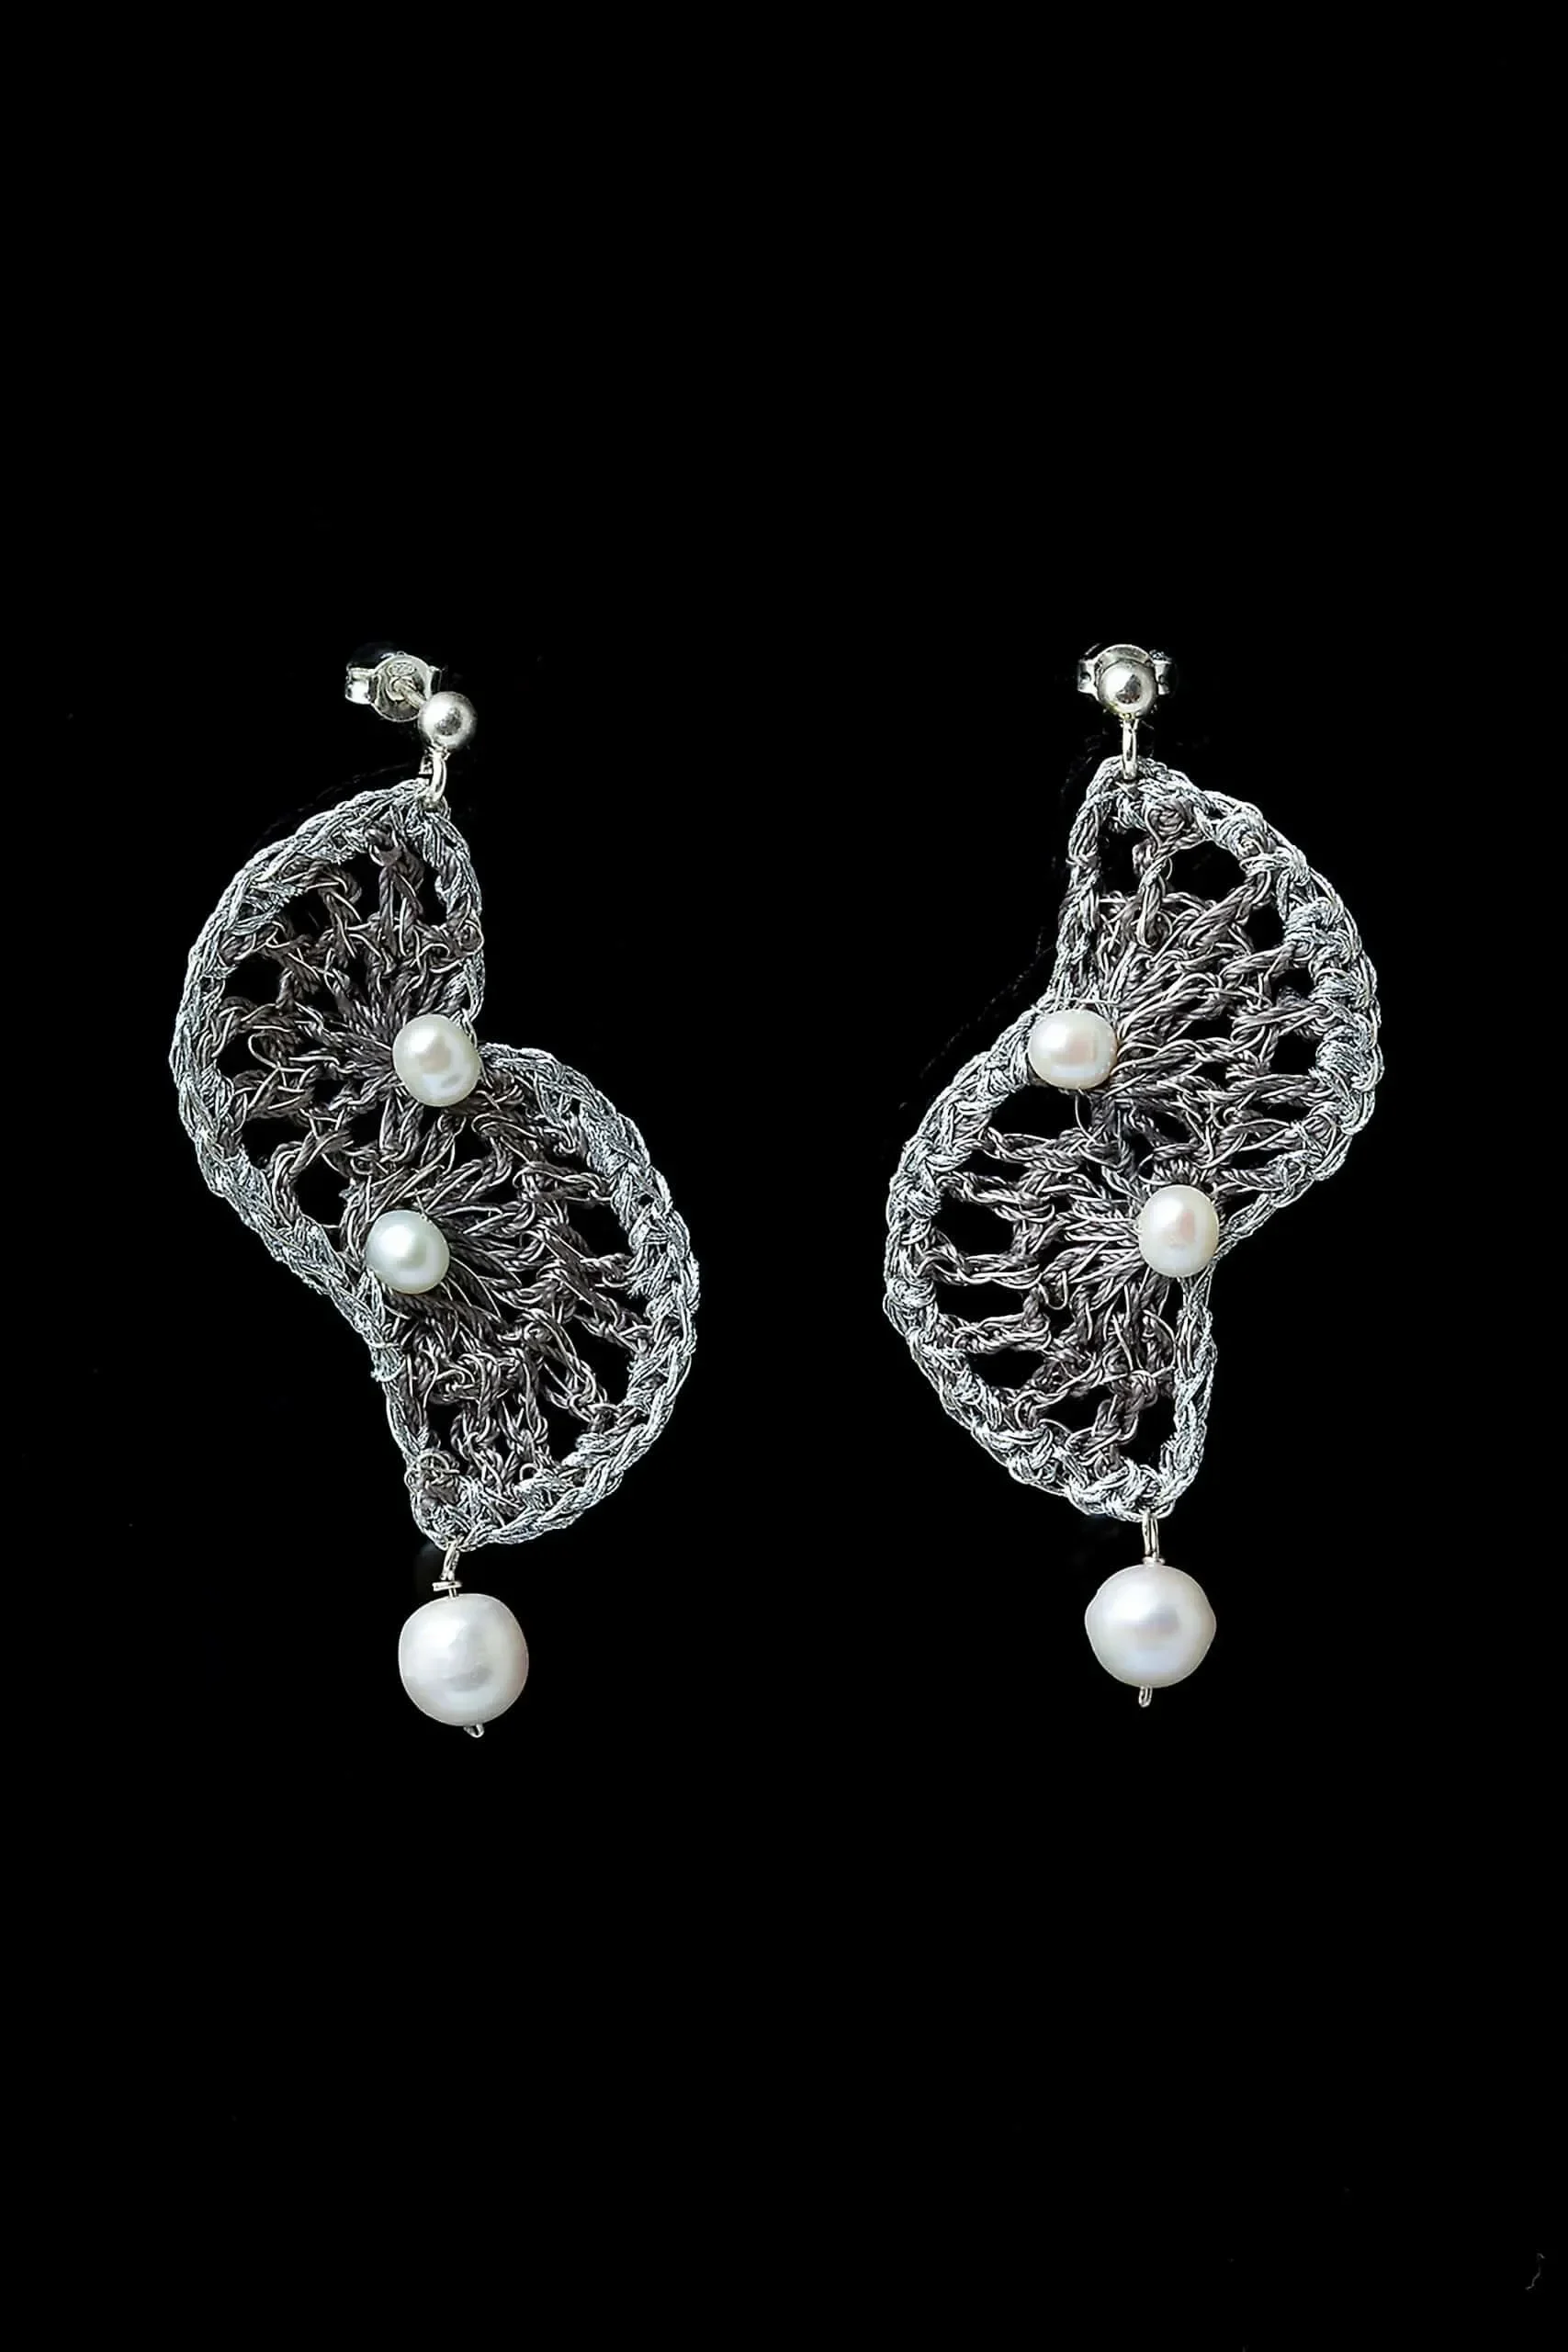 Handmade Jewellery | Fans crochet knit silver earrings with pearls gallery 2